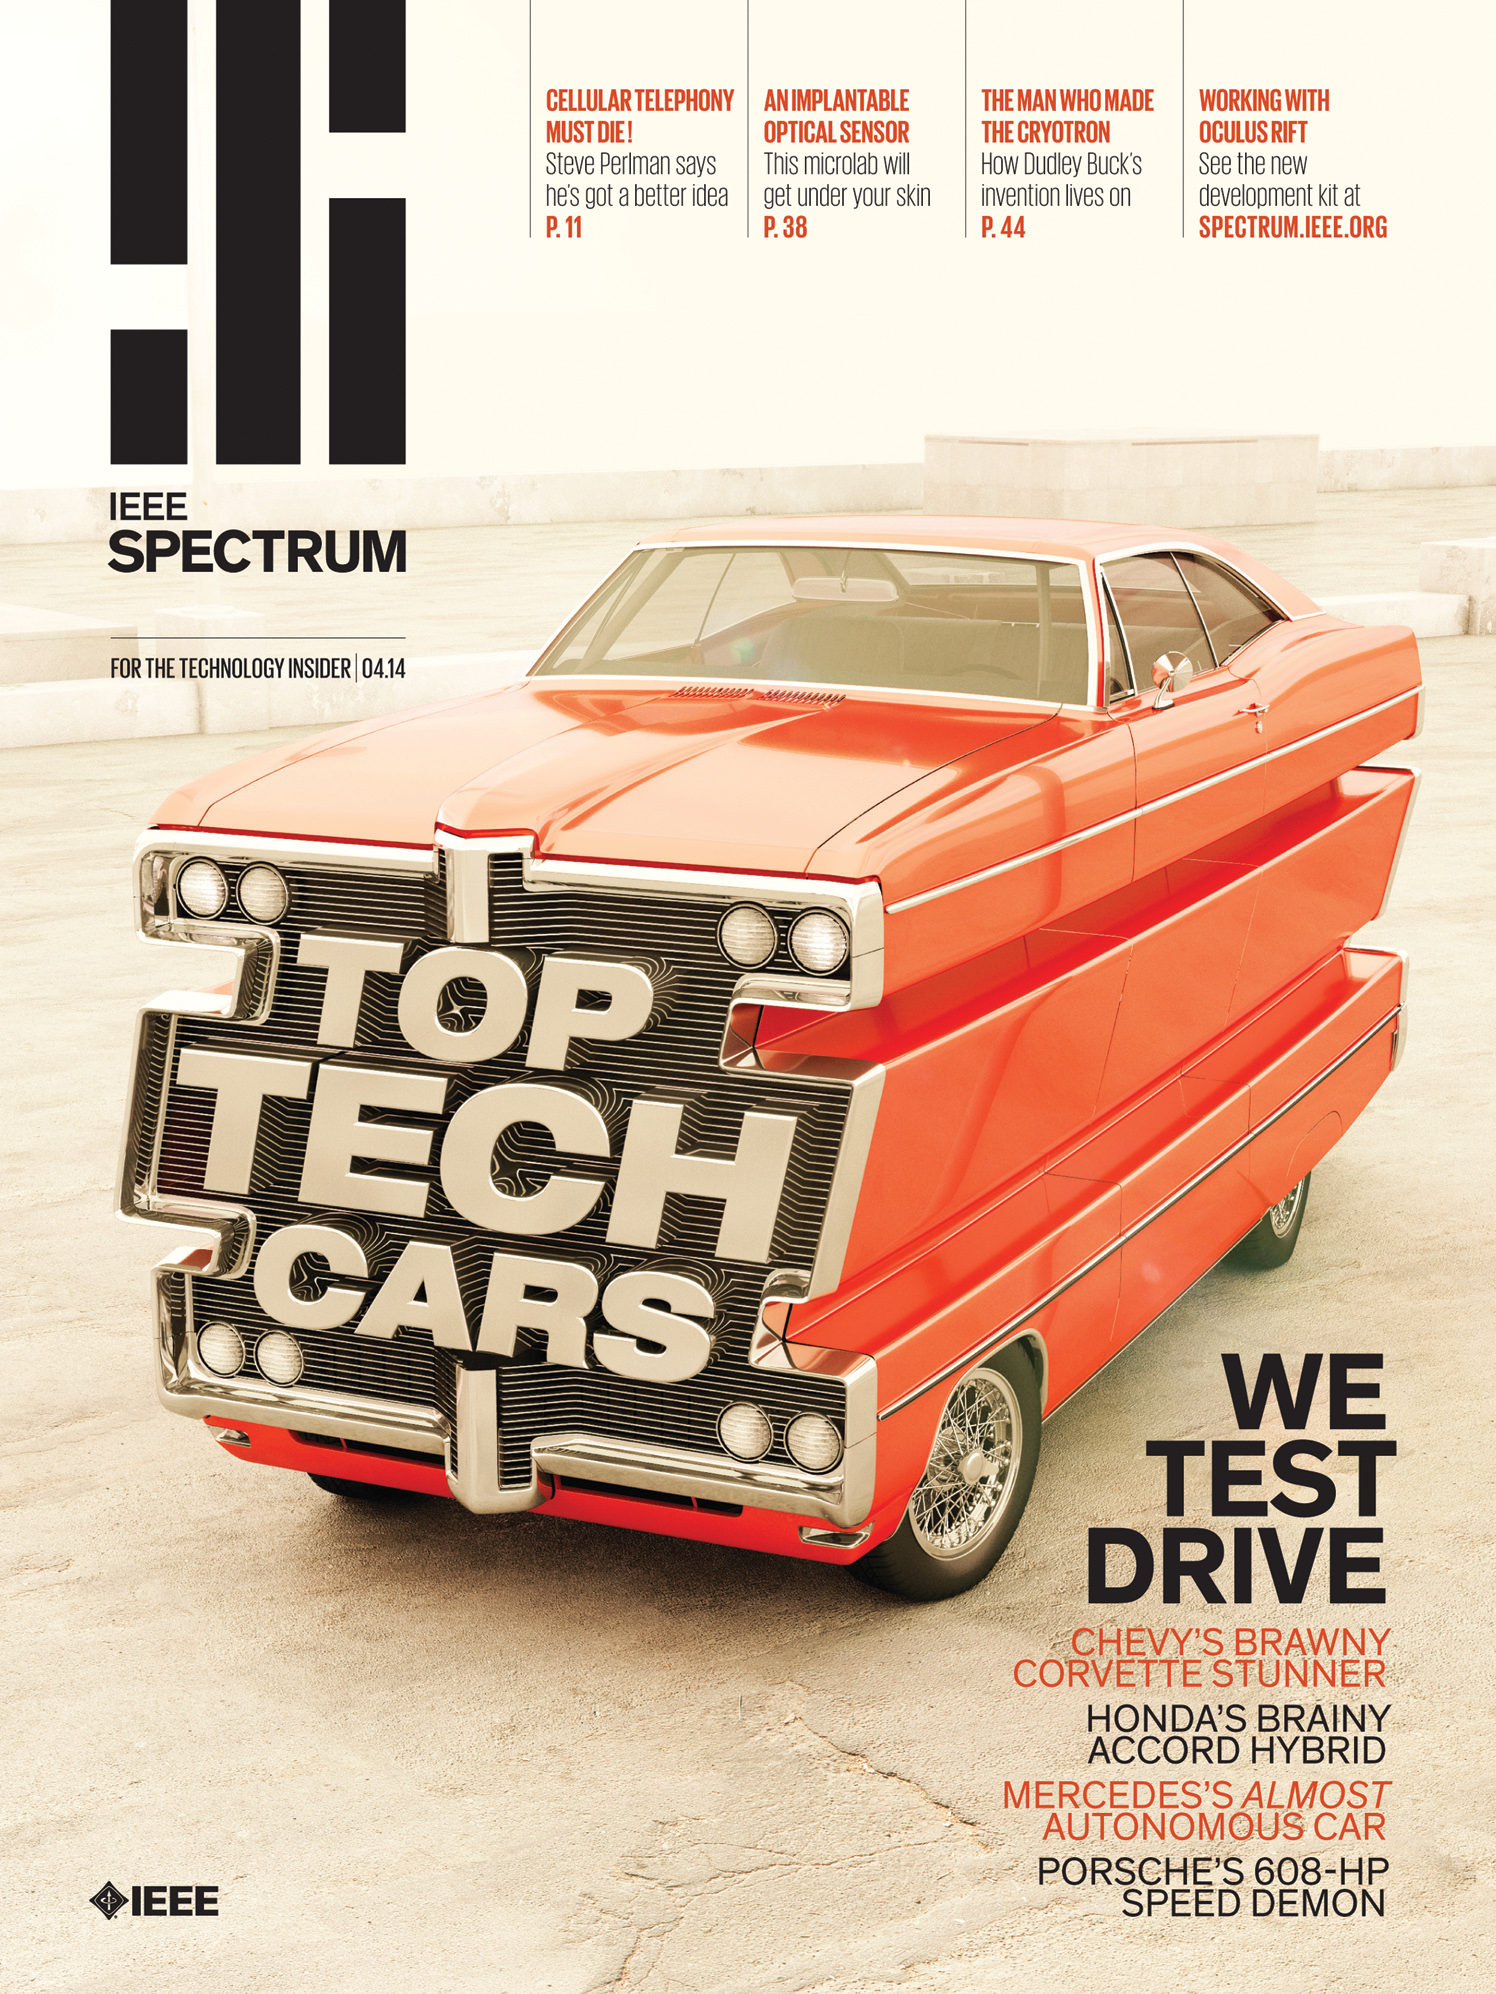 Top Tech Cars / IEEE Spectrum